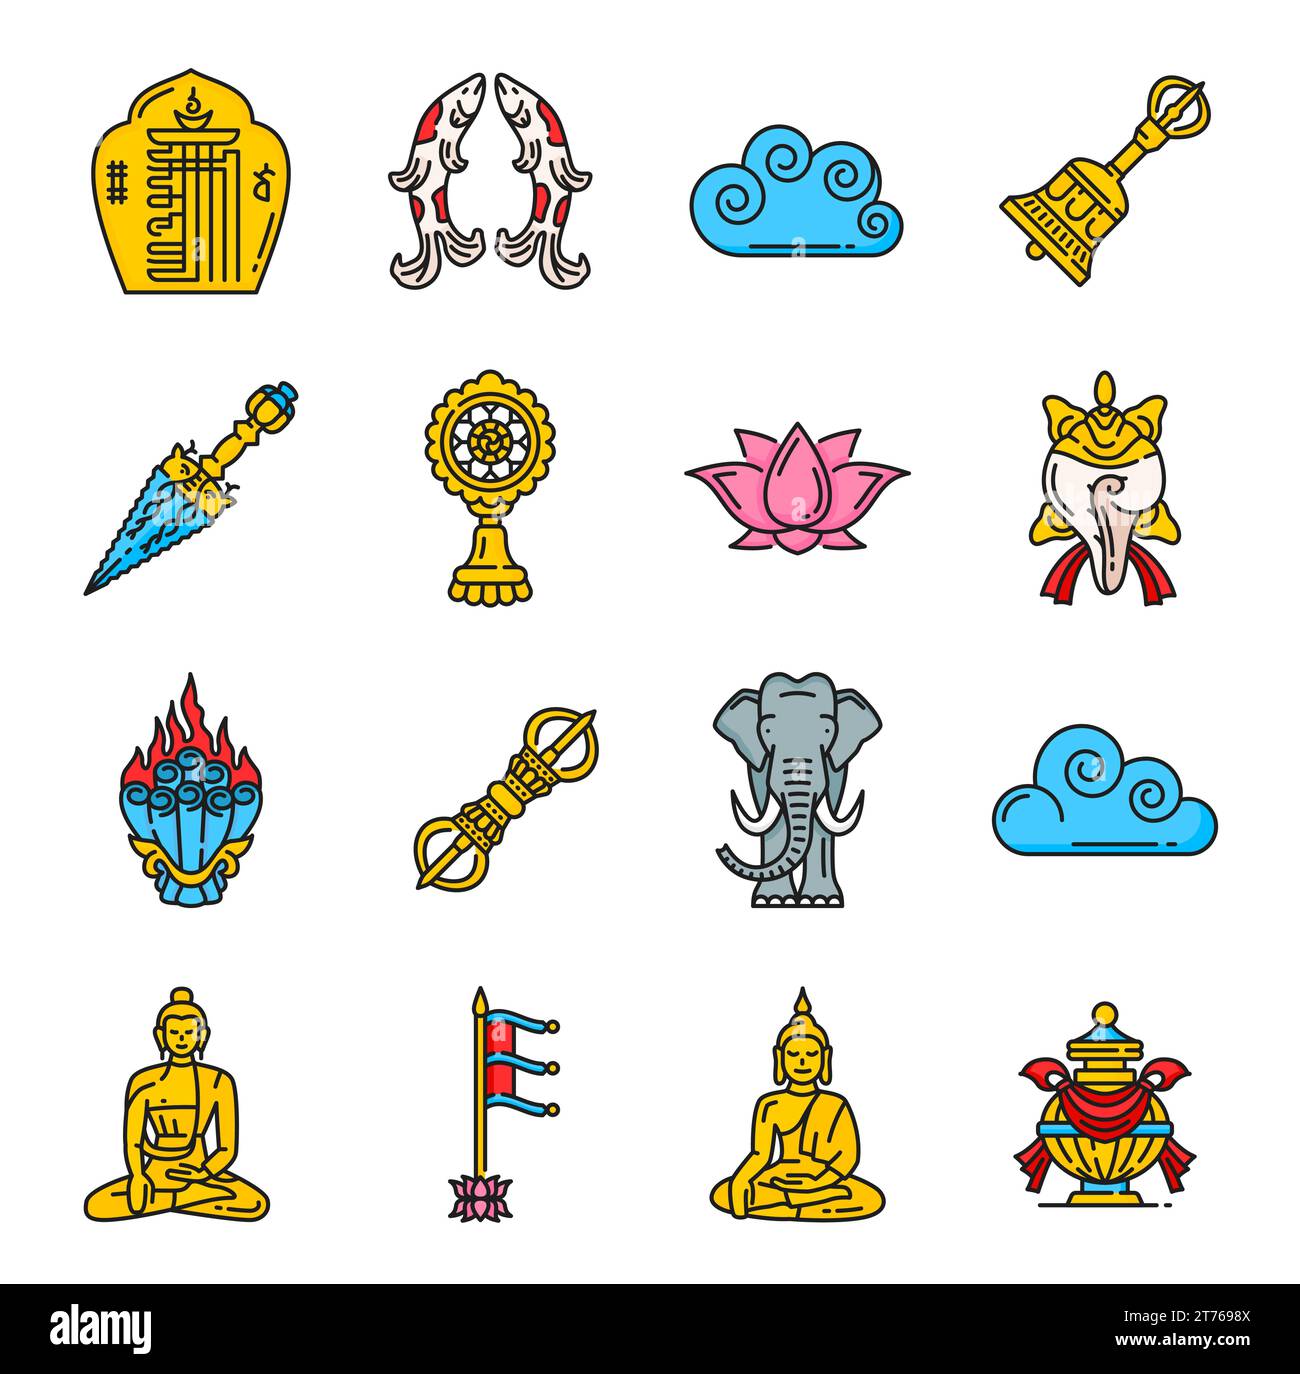 Buddhismus Religionssymbole und religiöse Symbole von Dharma, Vektor Lotus und Buddha. Tibetischer Buddhismus religiöse Zeichen des Siegesbanner, Wunsch, Juwelen und heiligen Elefanten mit Dharmachakra zu verleihen Stock Vektor